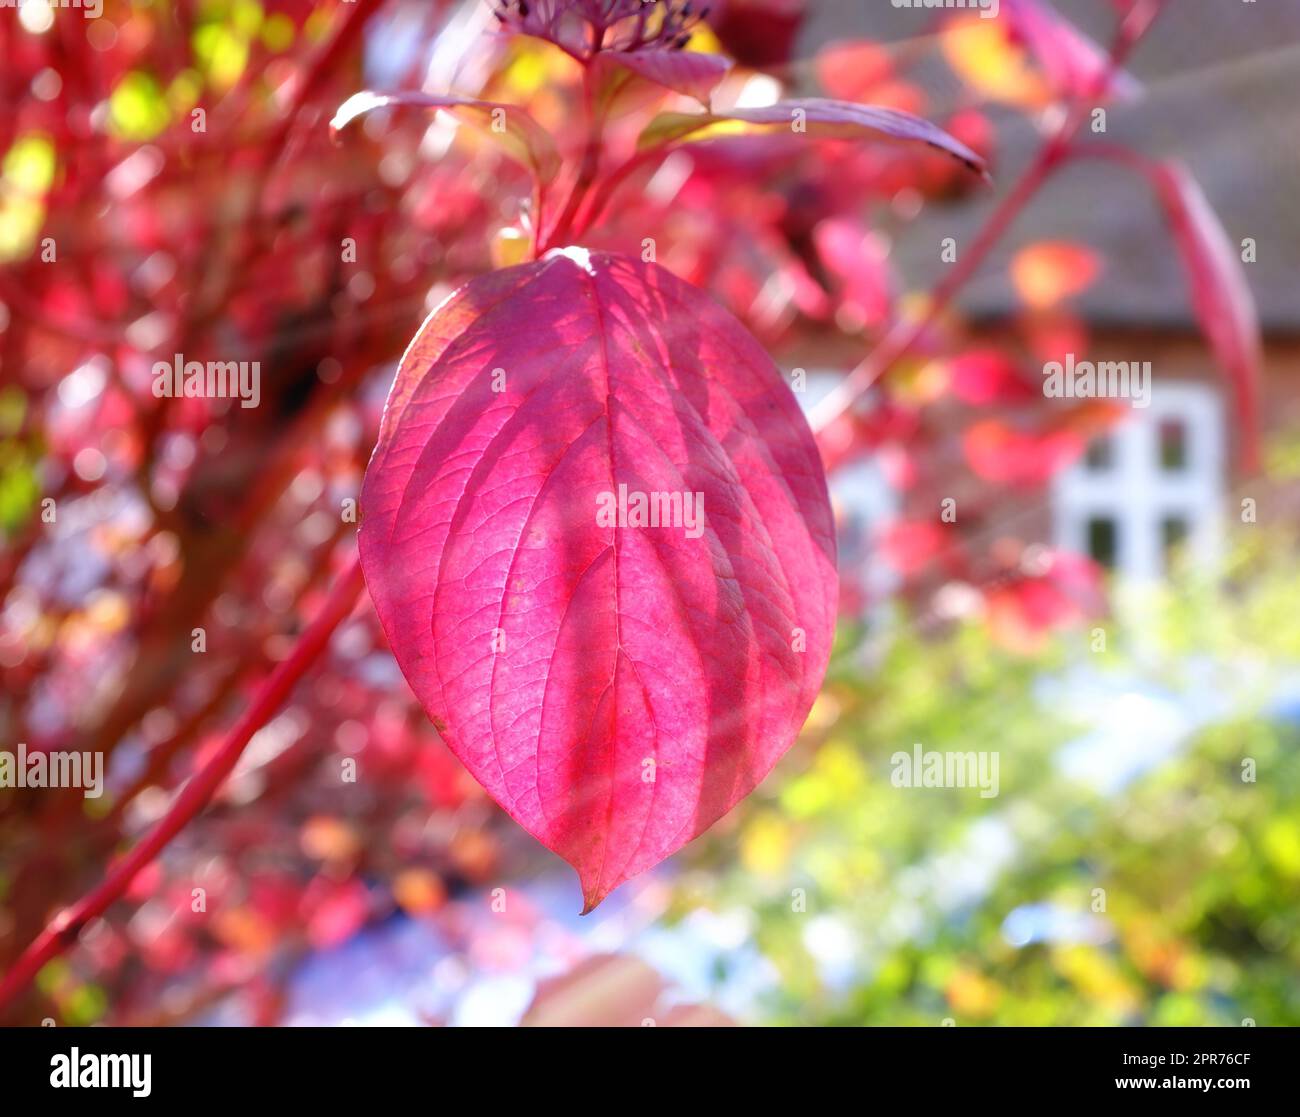 Die roten Herbstblätter blühen in der Sonne und die Sonnenstrahlen scheinen hindurch. Naturszene Nahaufnahme eines rosafarbenen Blatts, das vom Wind und Herbst geblasen wird, mit einem verwackelten bunten Bokeh-Hintergrund in einem Garten Stockfoto